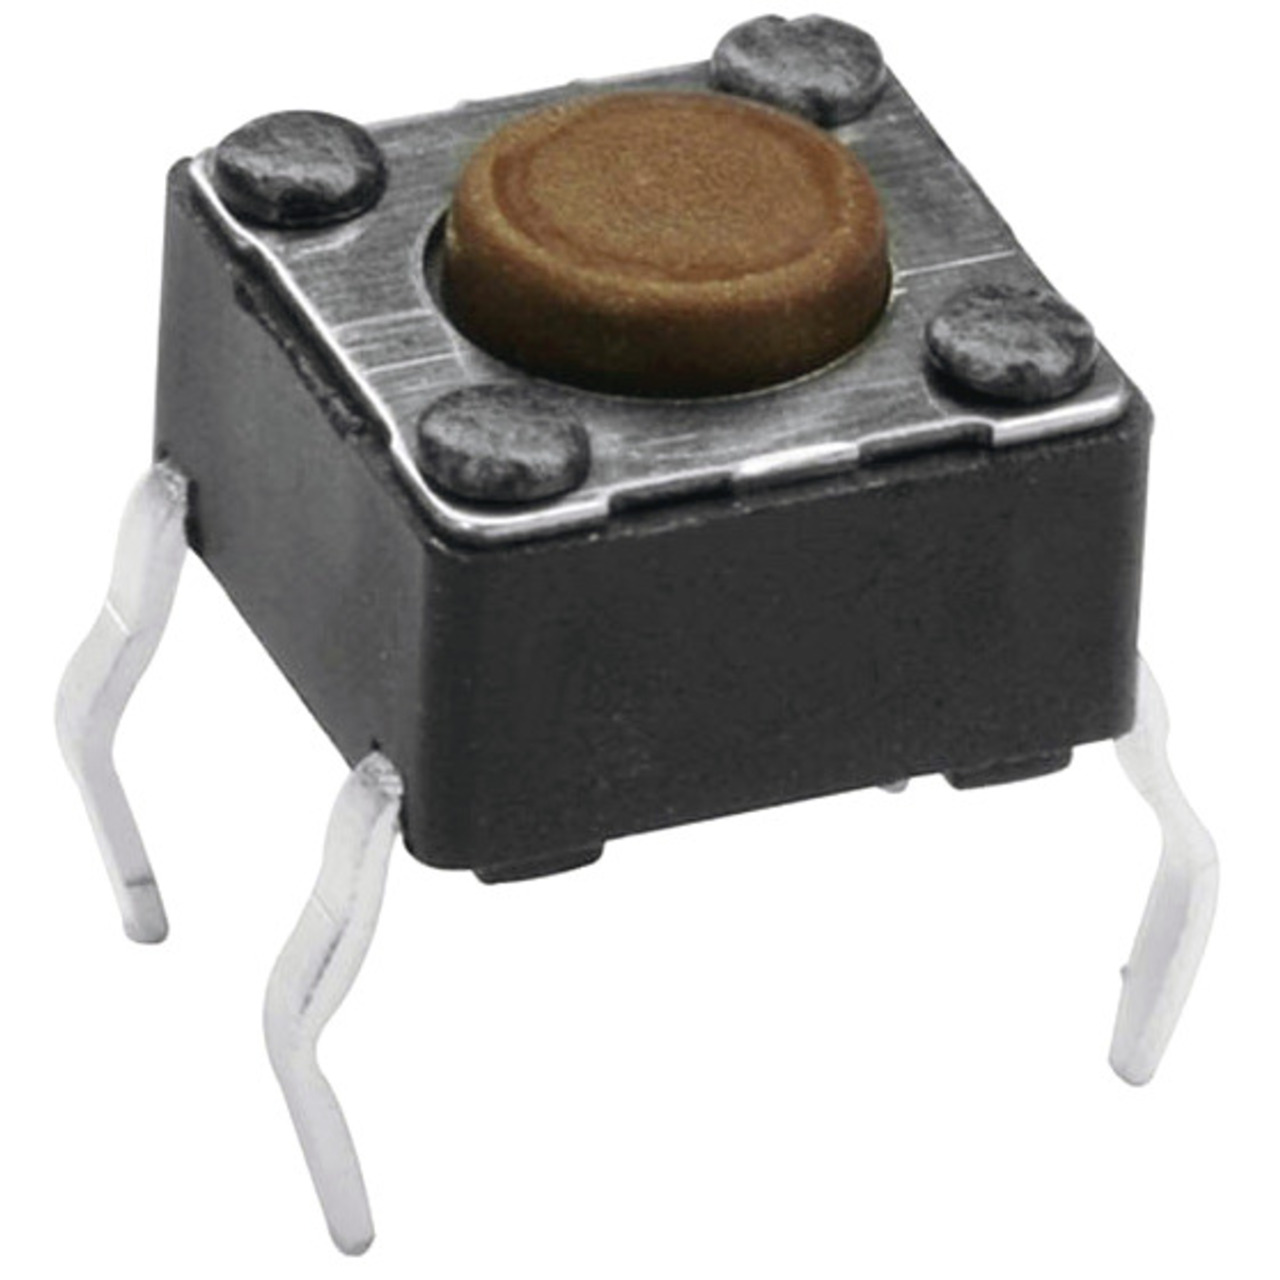 Miniatur-Drucktaster 1x ein- Knopflänge 1-2 mm